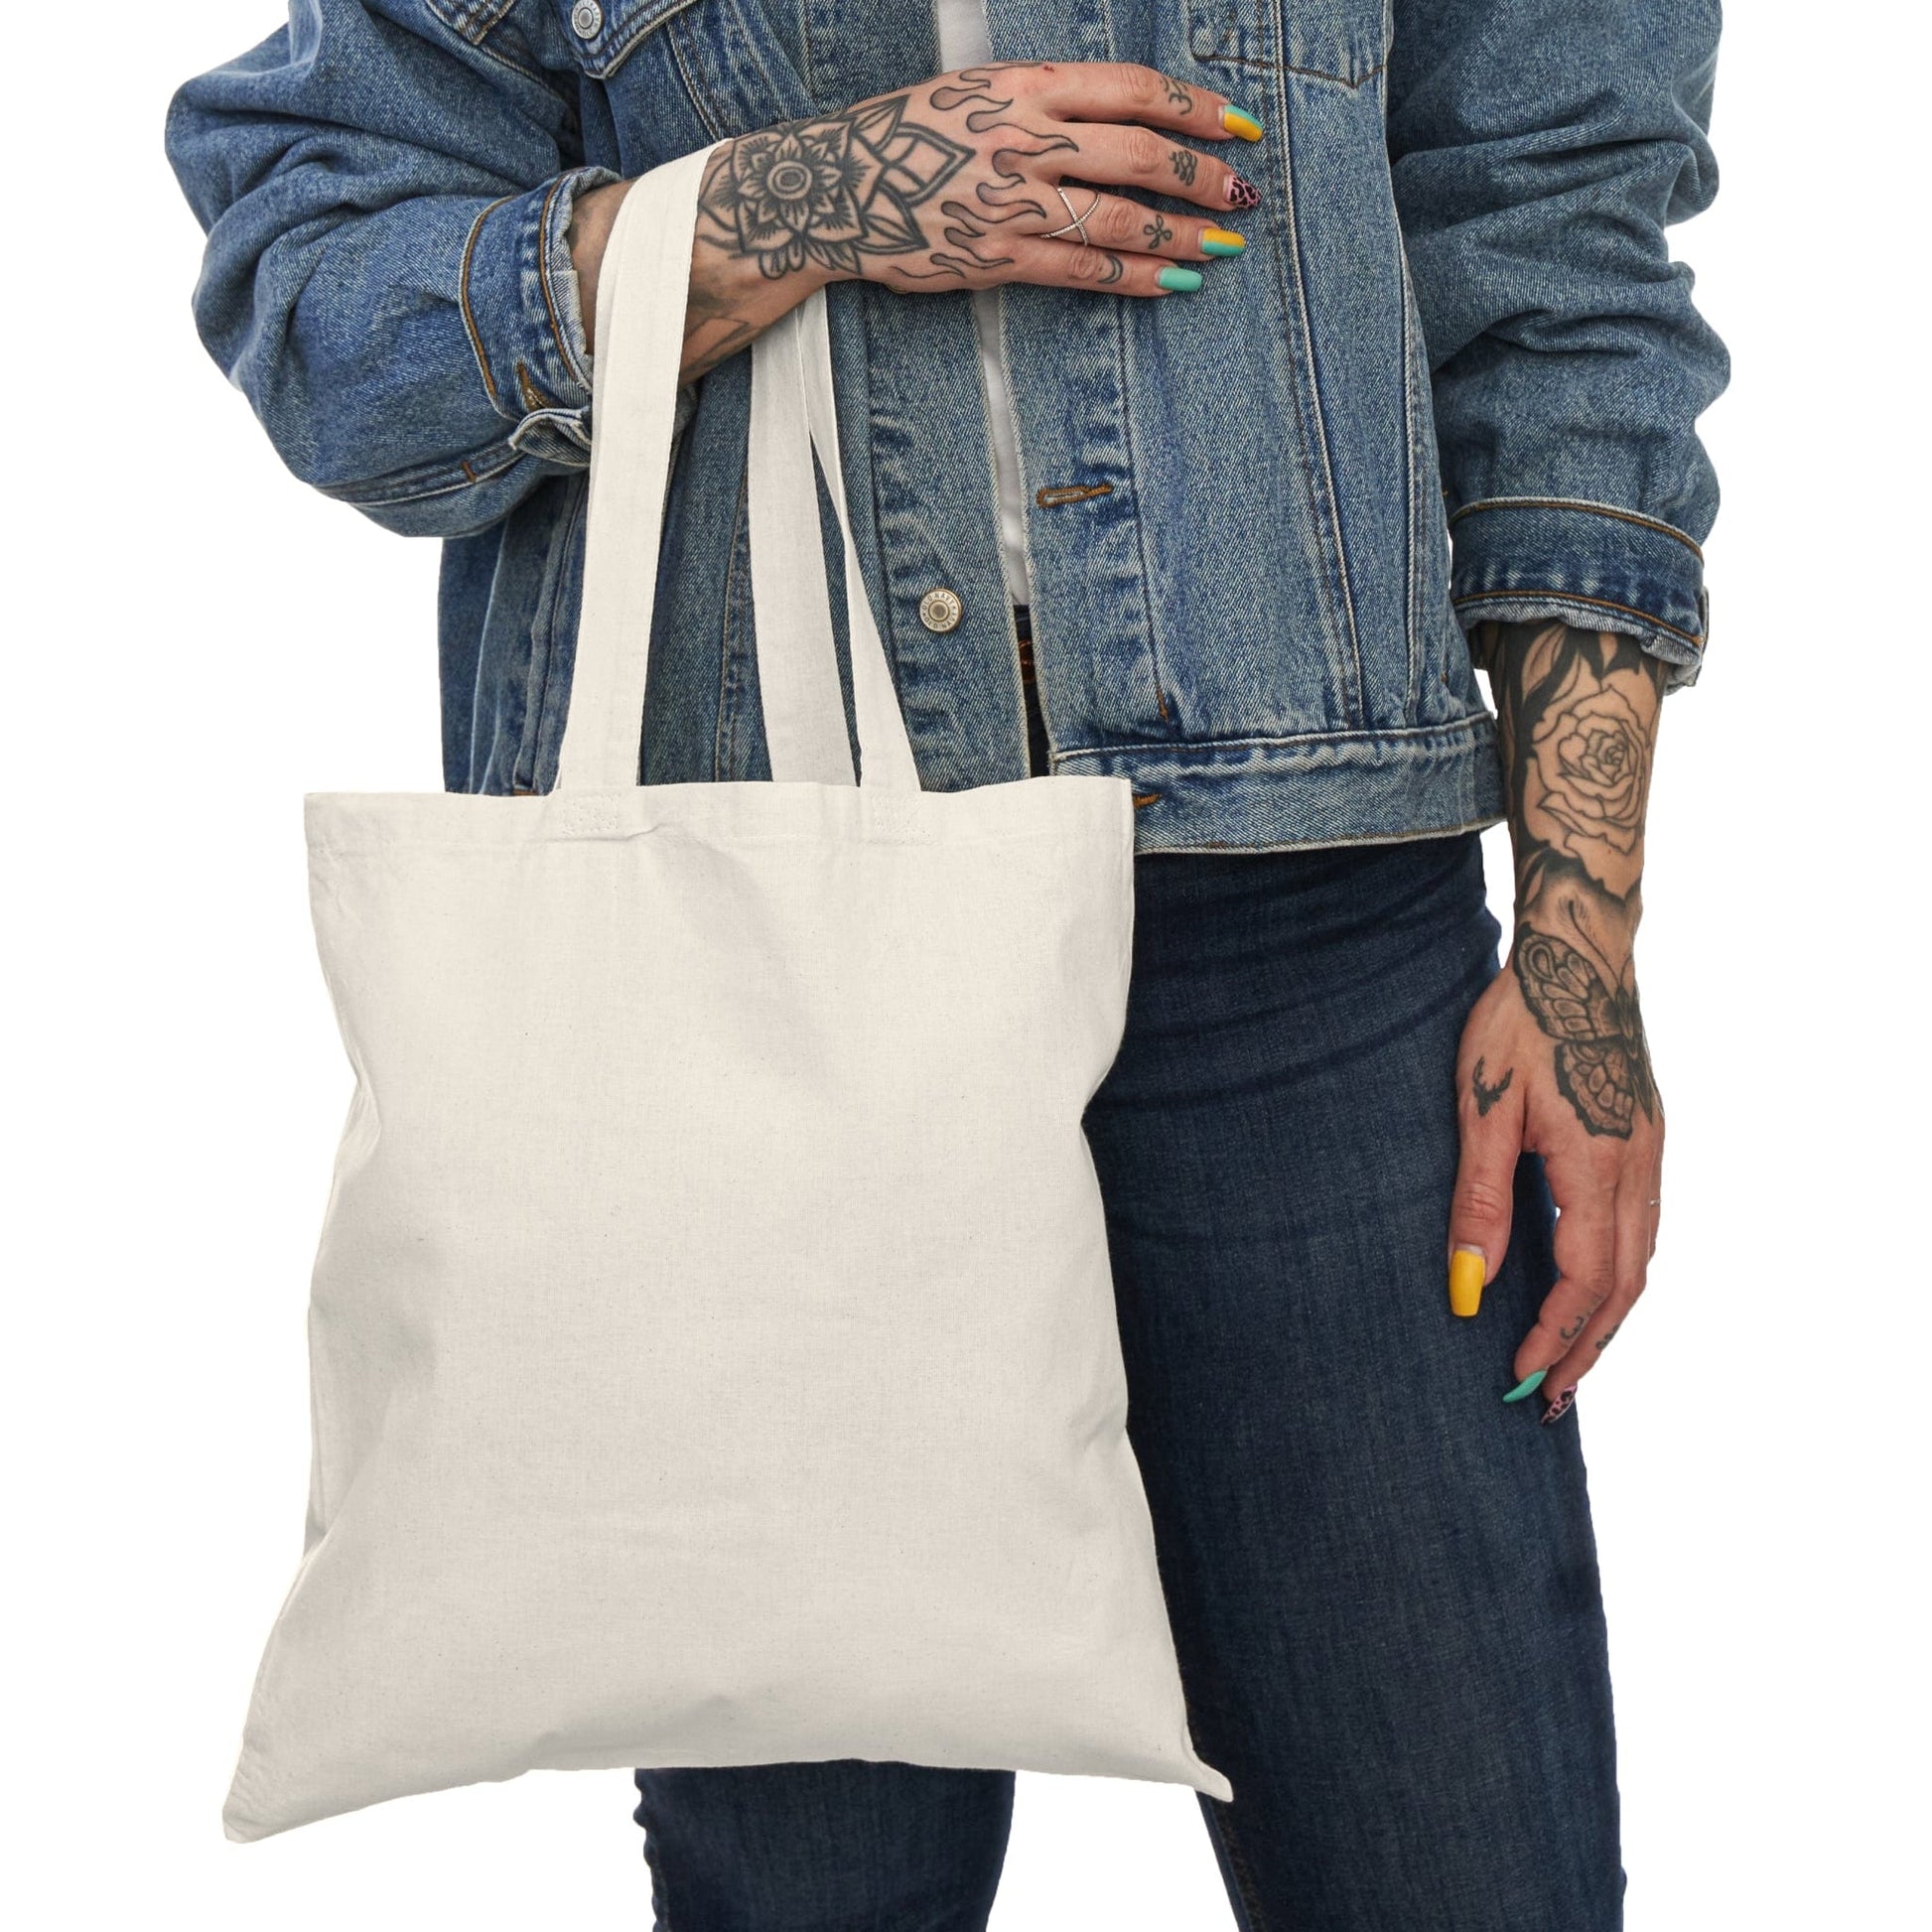 Printify Bags 15" x 16" / Natural Natural Tote Bag